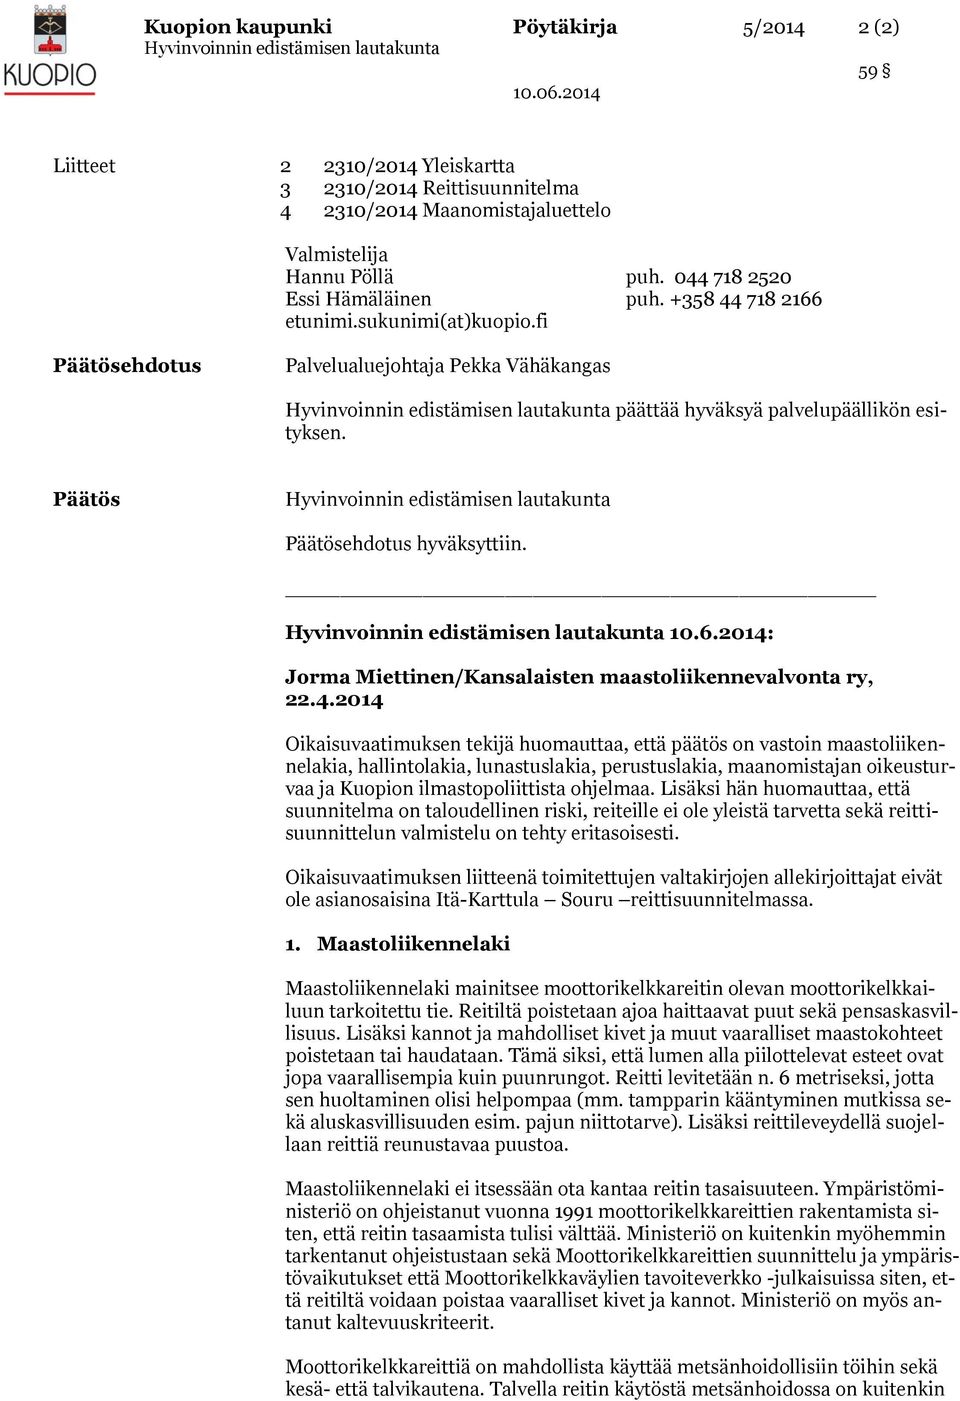 4.2014 Oikaisuvaatimuksen tekijä huomauttaa, että päätös on vastoin maastoliikennelakia, hallintolakia, lunastuslakia, perustuslakia, maanomistajan oikeusturvaa ja Kuopion ilmastopoliittista ohjelmaa.